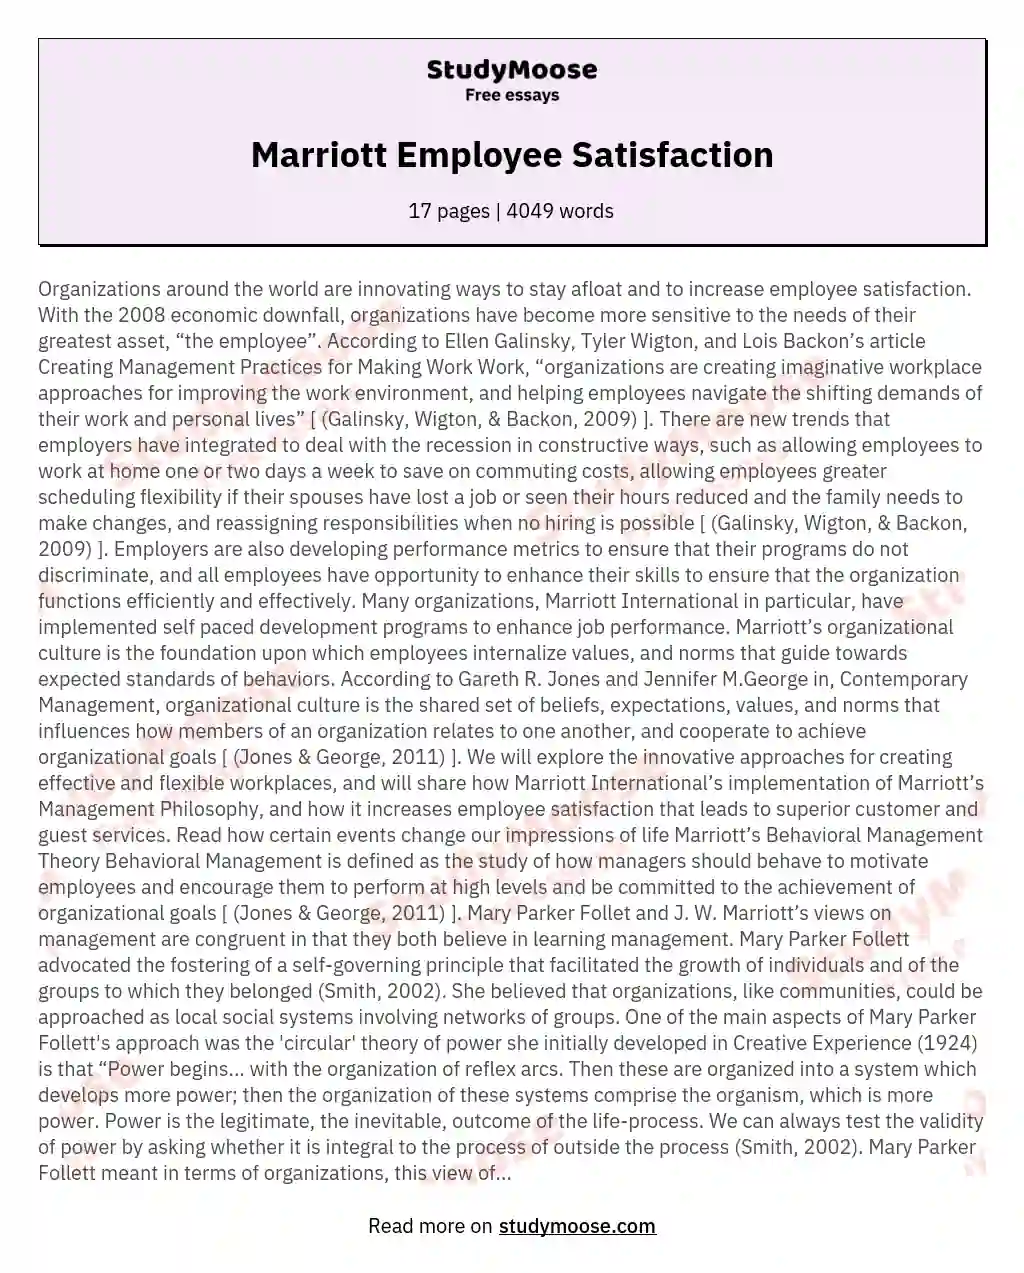 Marriott Employee Satisfaction essay